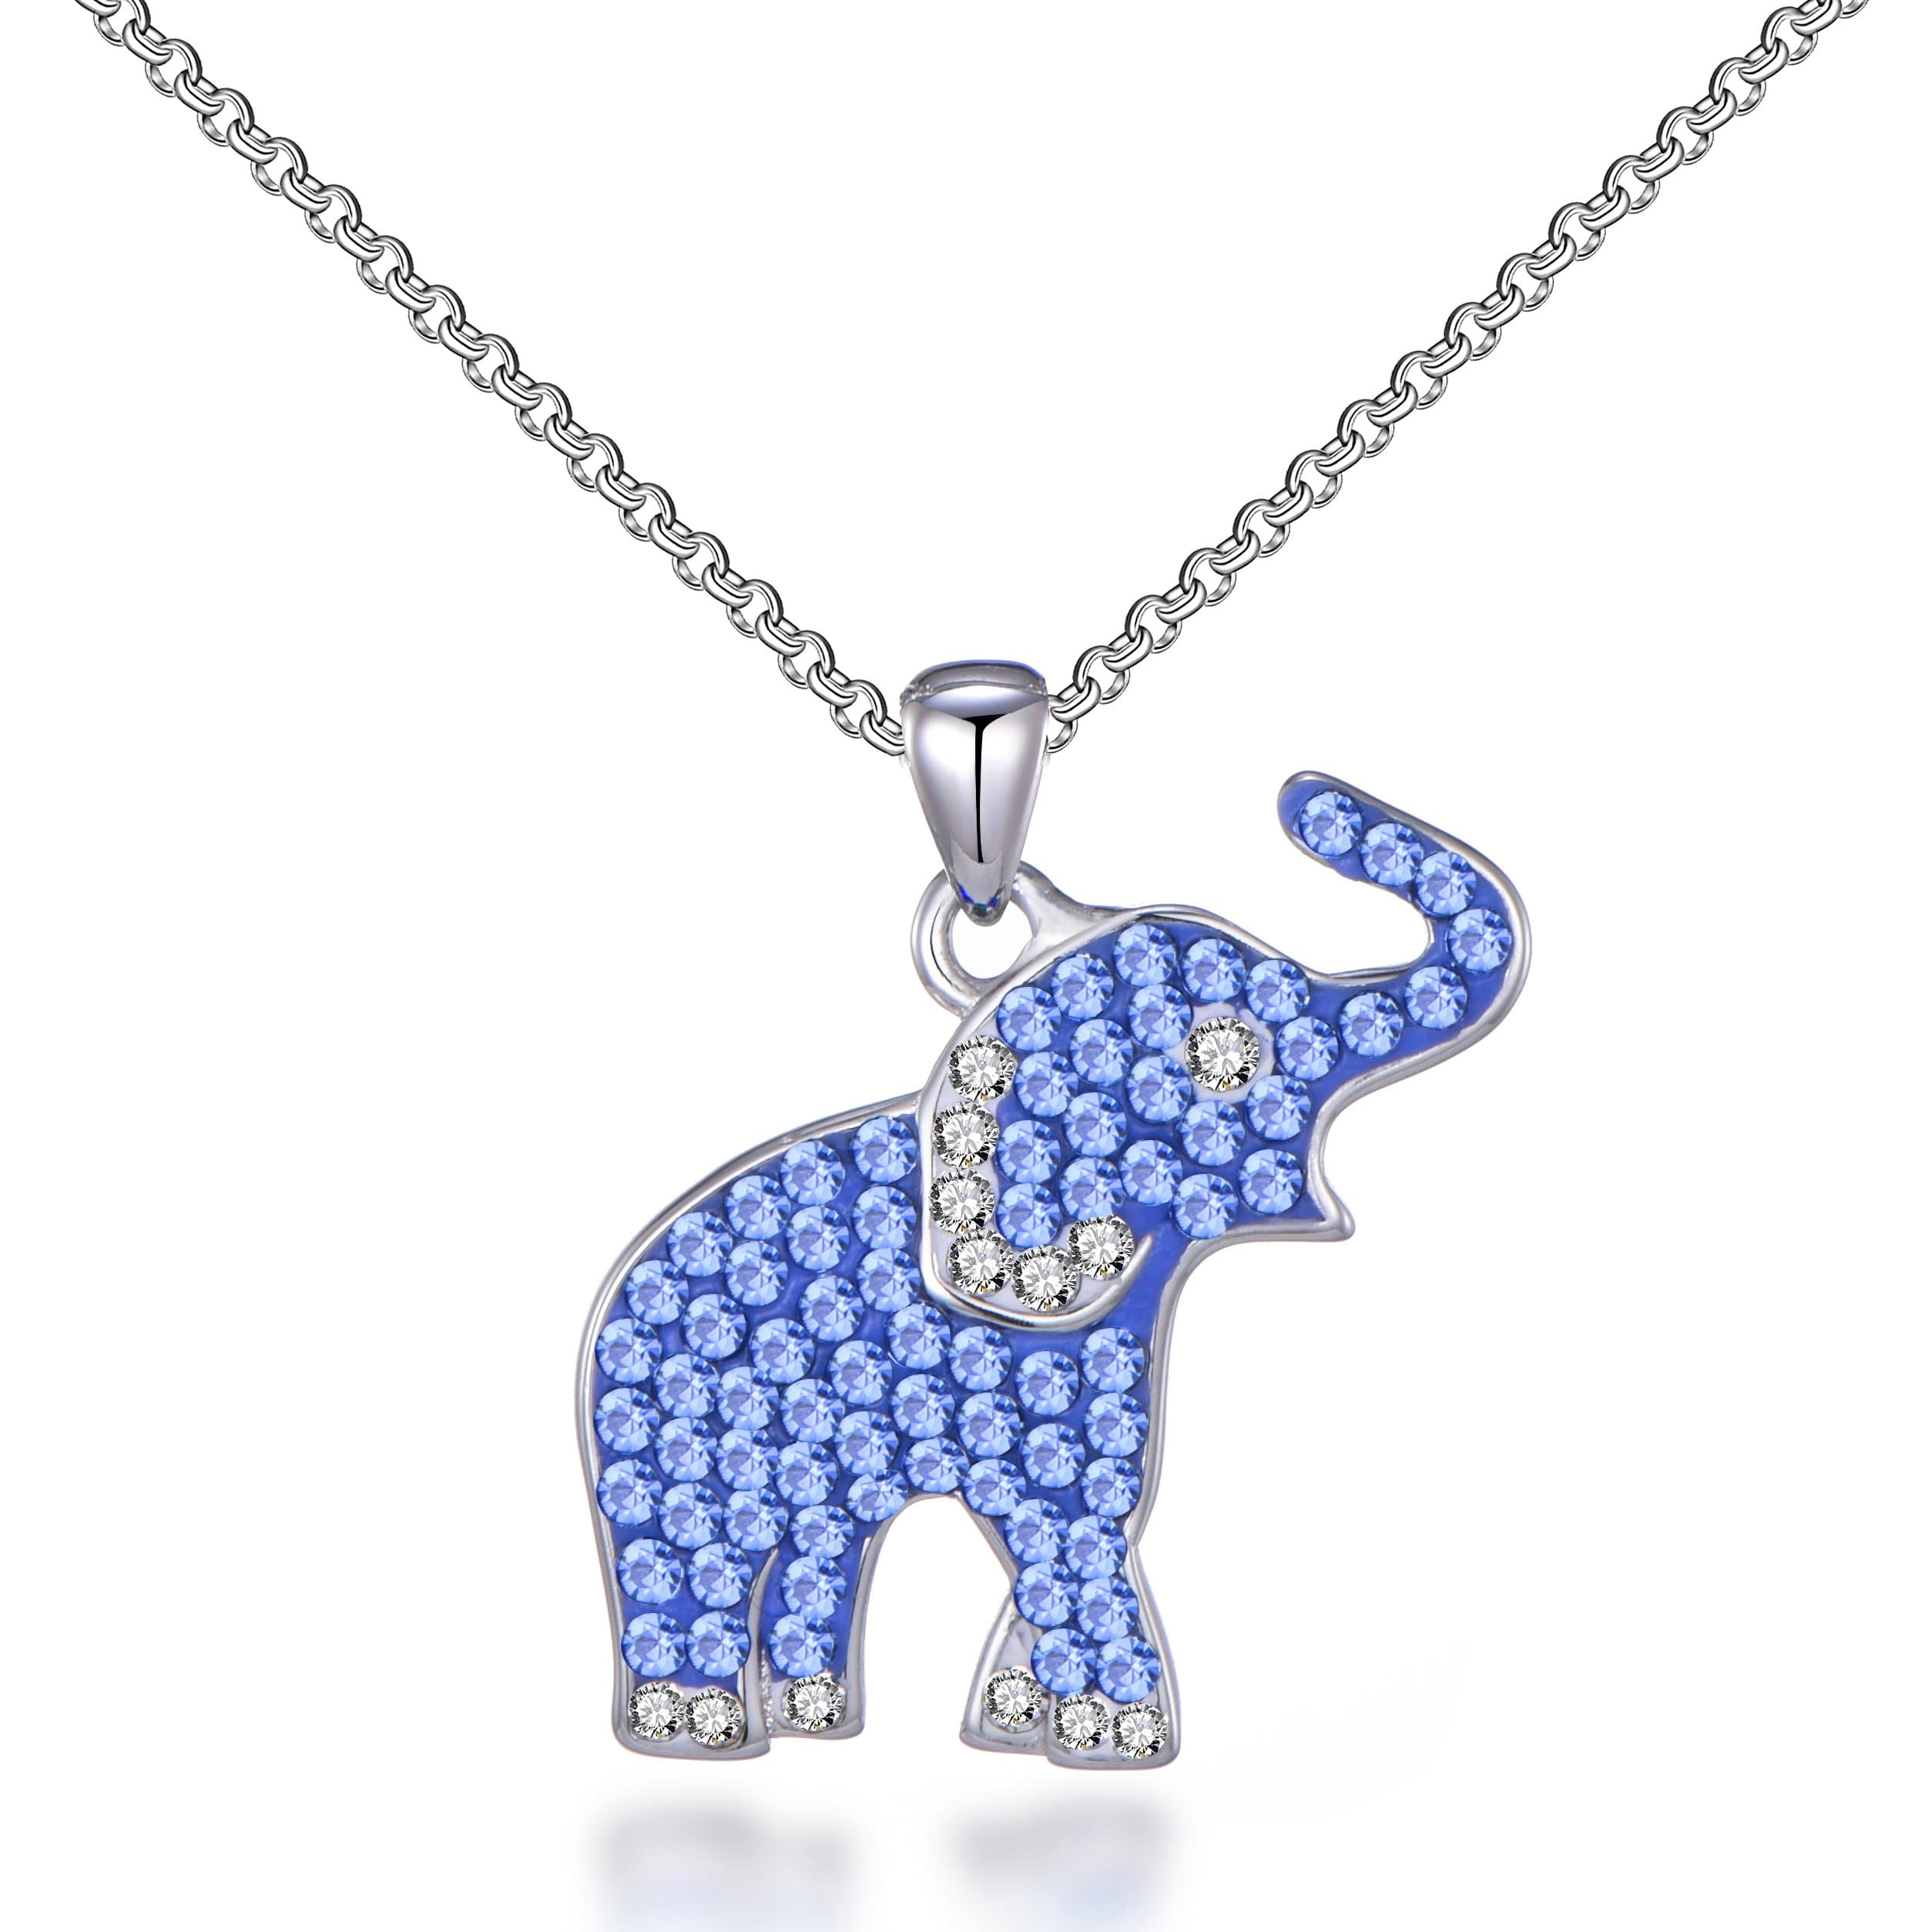 Elephant Necklace with Zircondia® Crystals by Philip Jones Jewellery